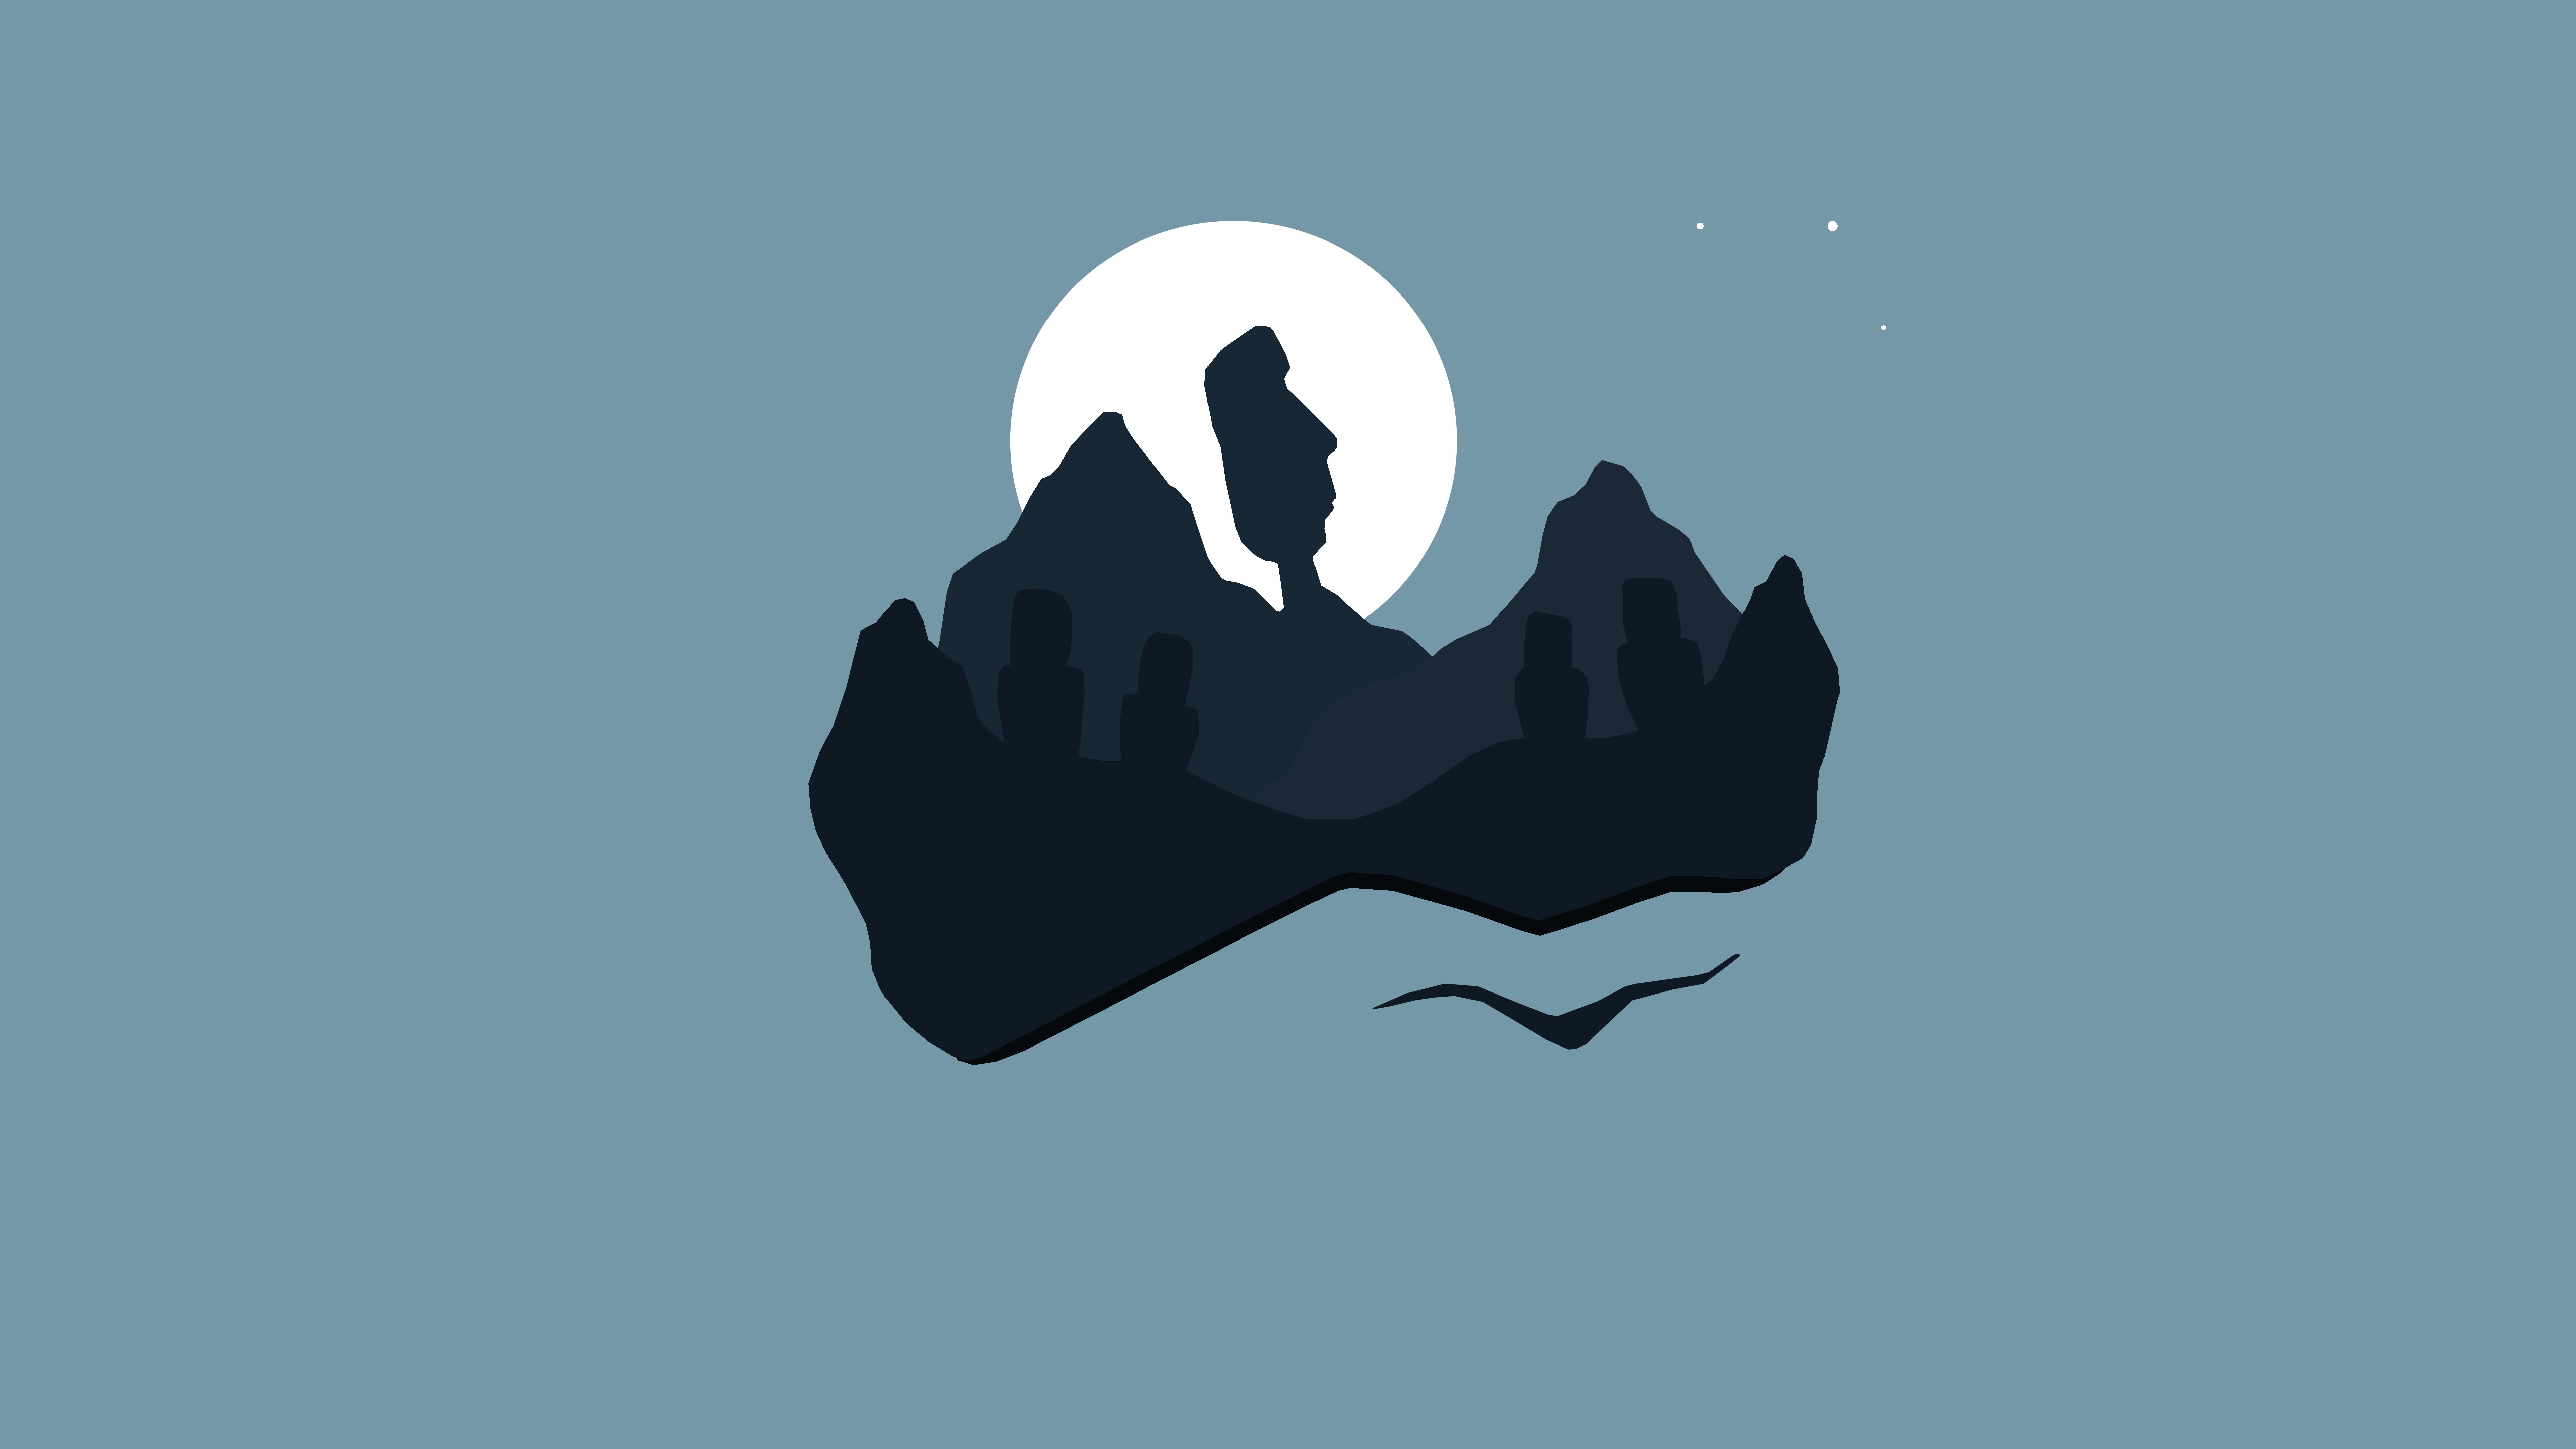 Moon Mountain Statue 7680x4320